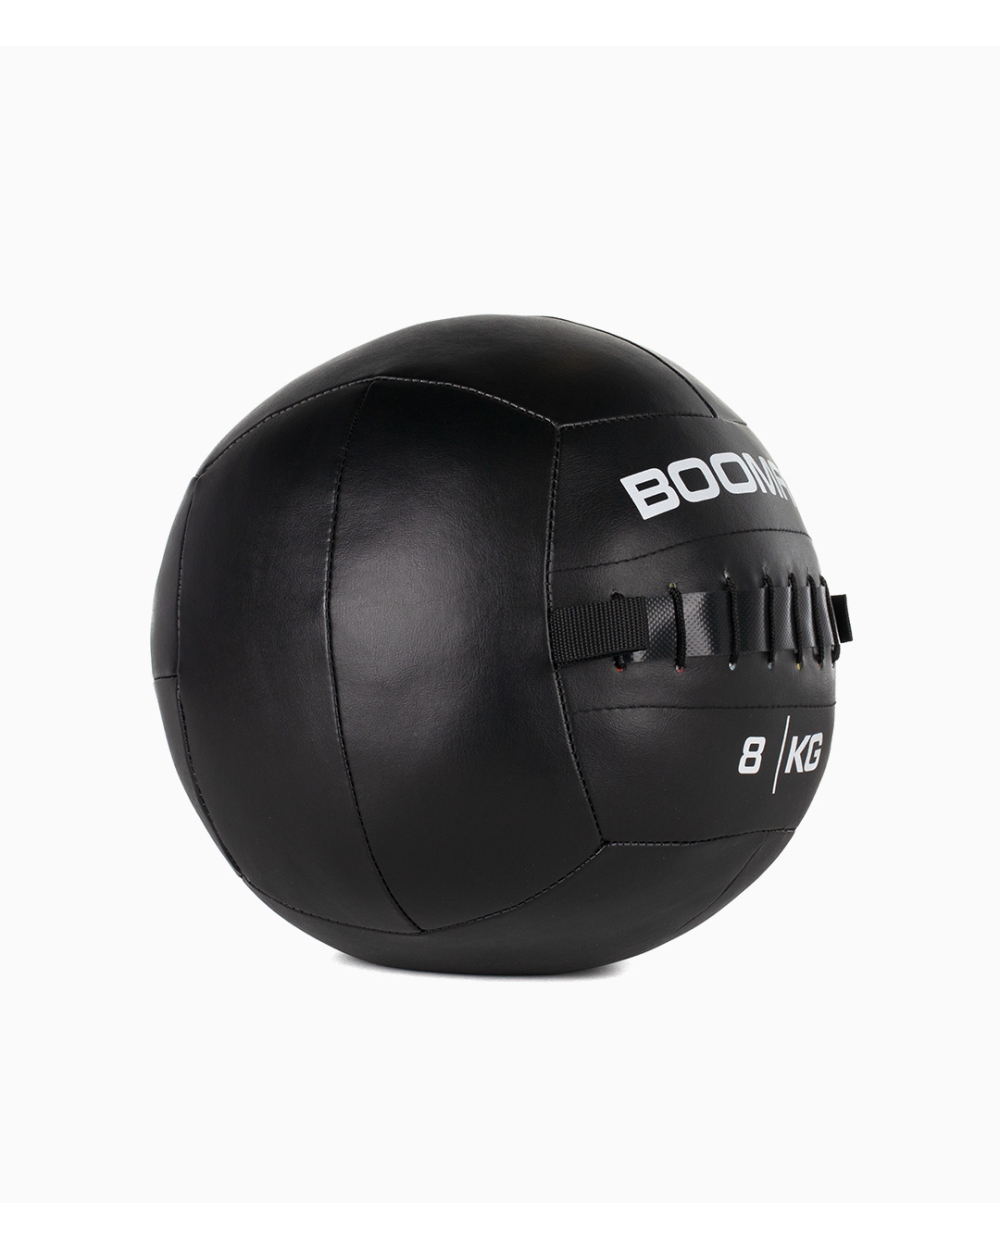 Wall Ball 8kg - Boomfit